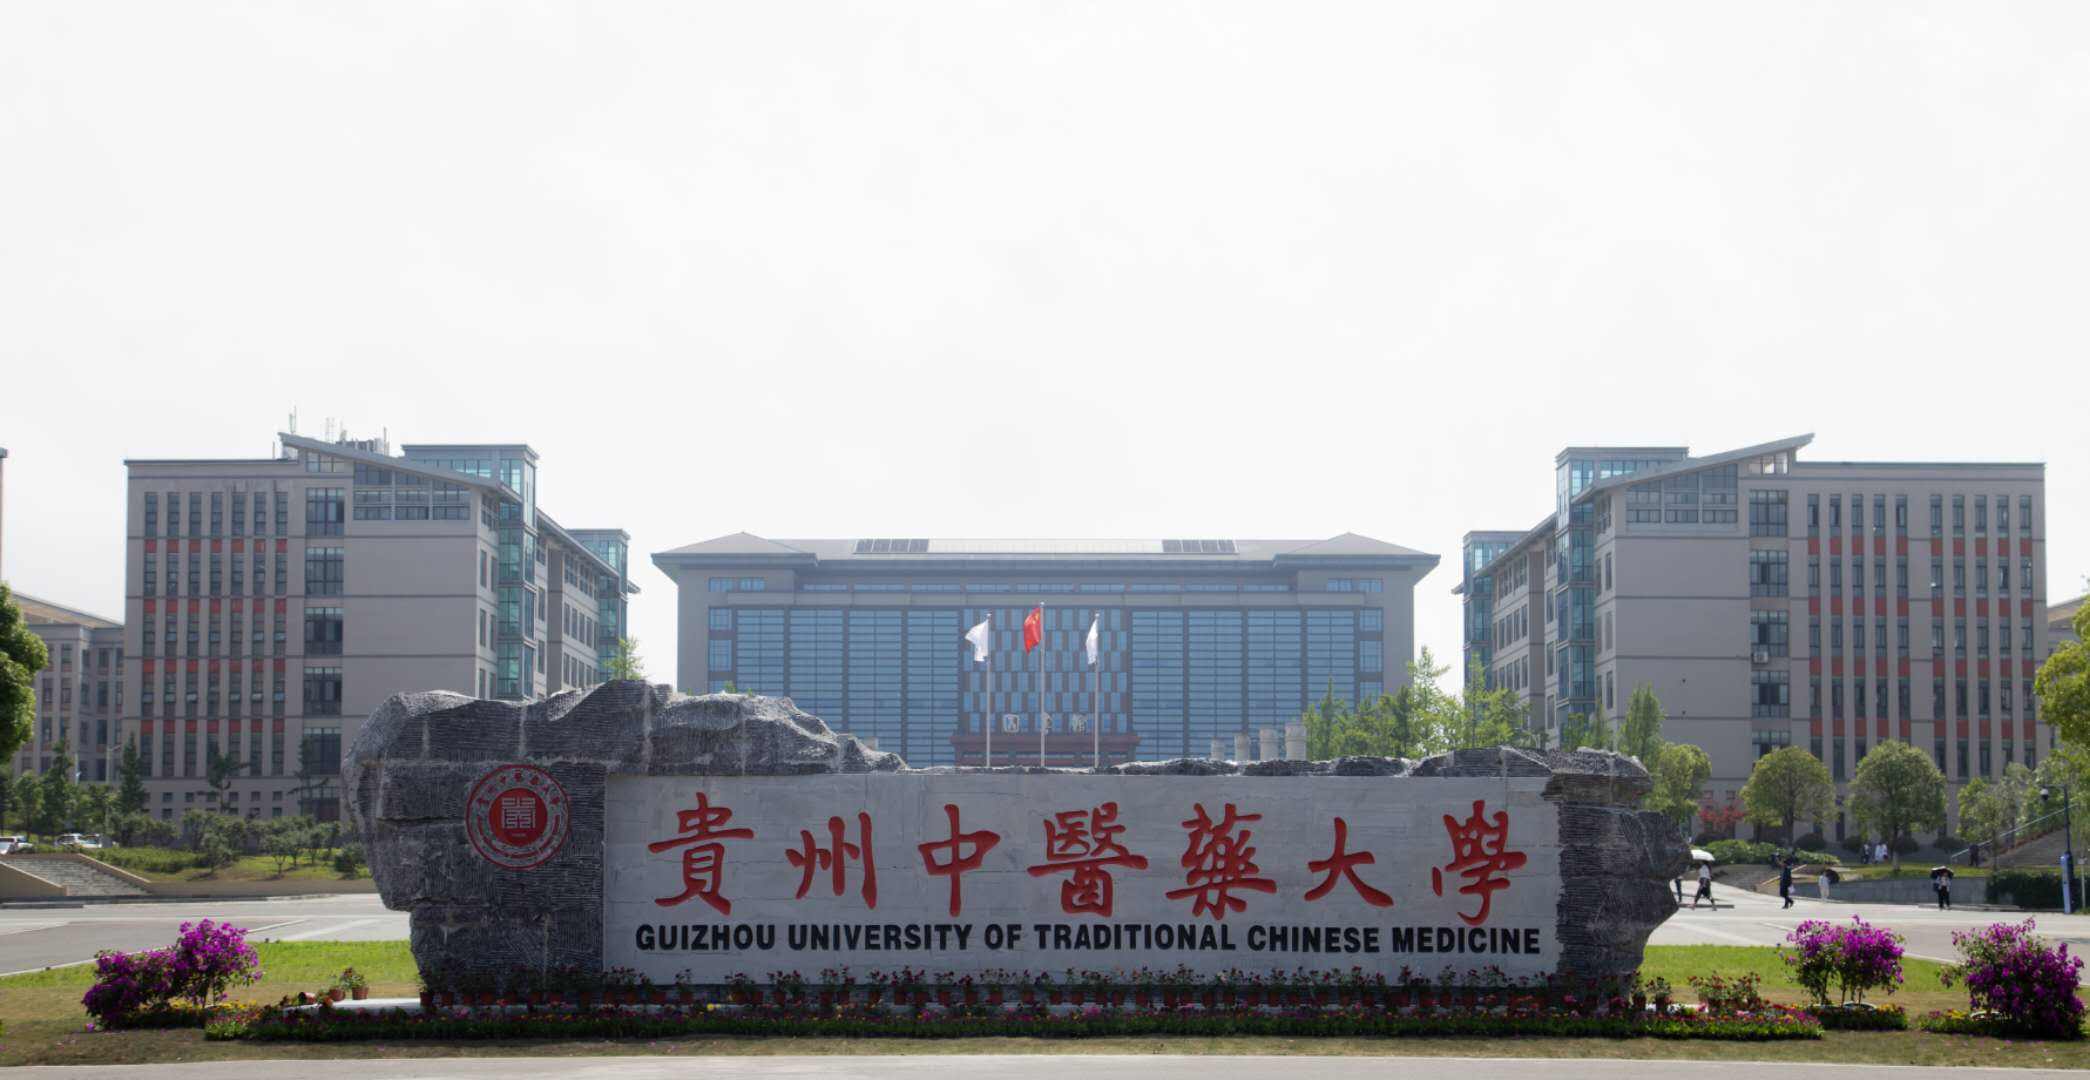 特色:贵州医科大学前身为1938年建立的国立贵阳医学院,是全国最早